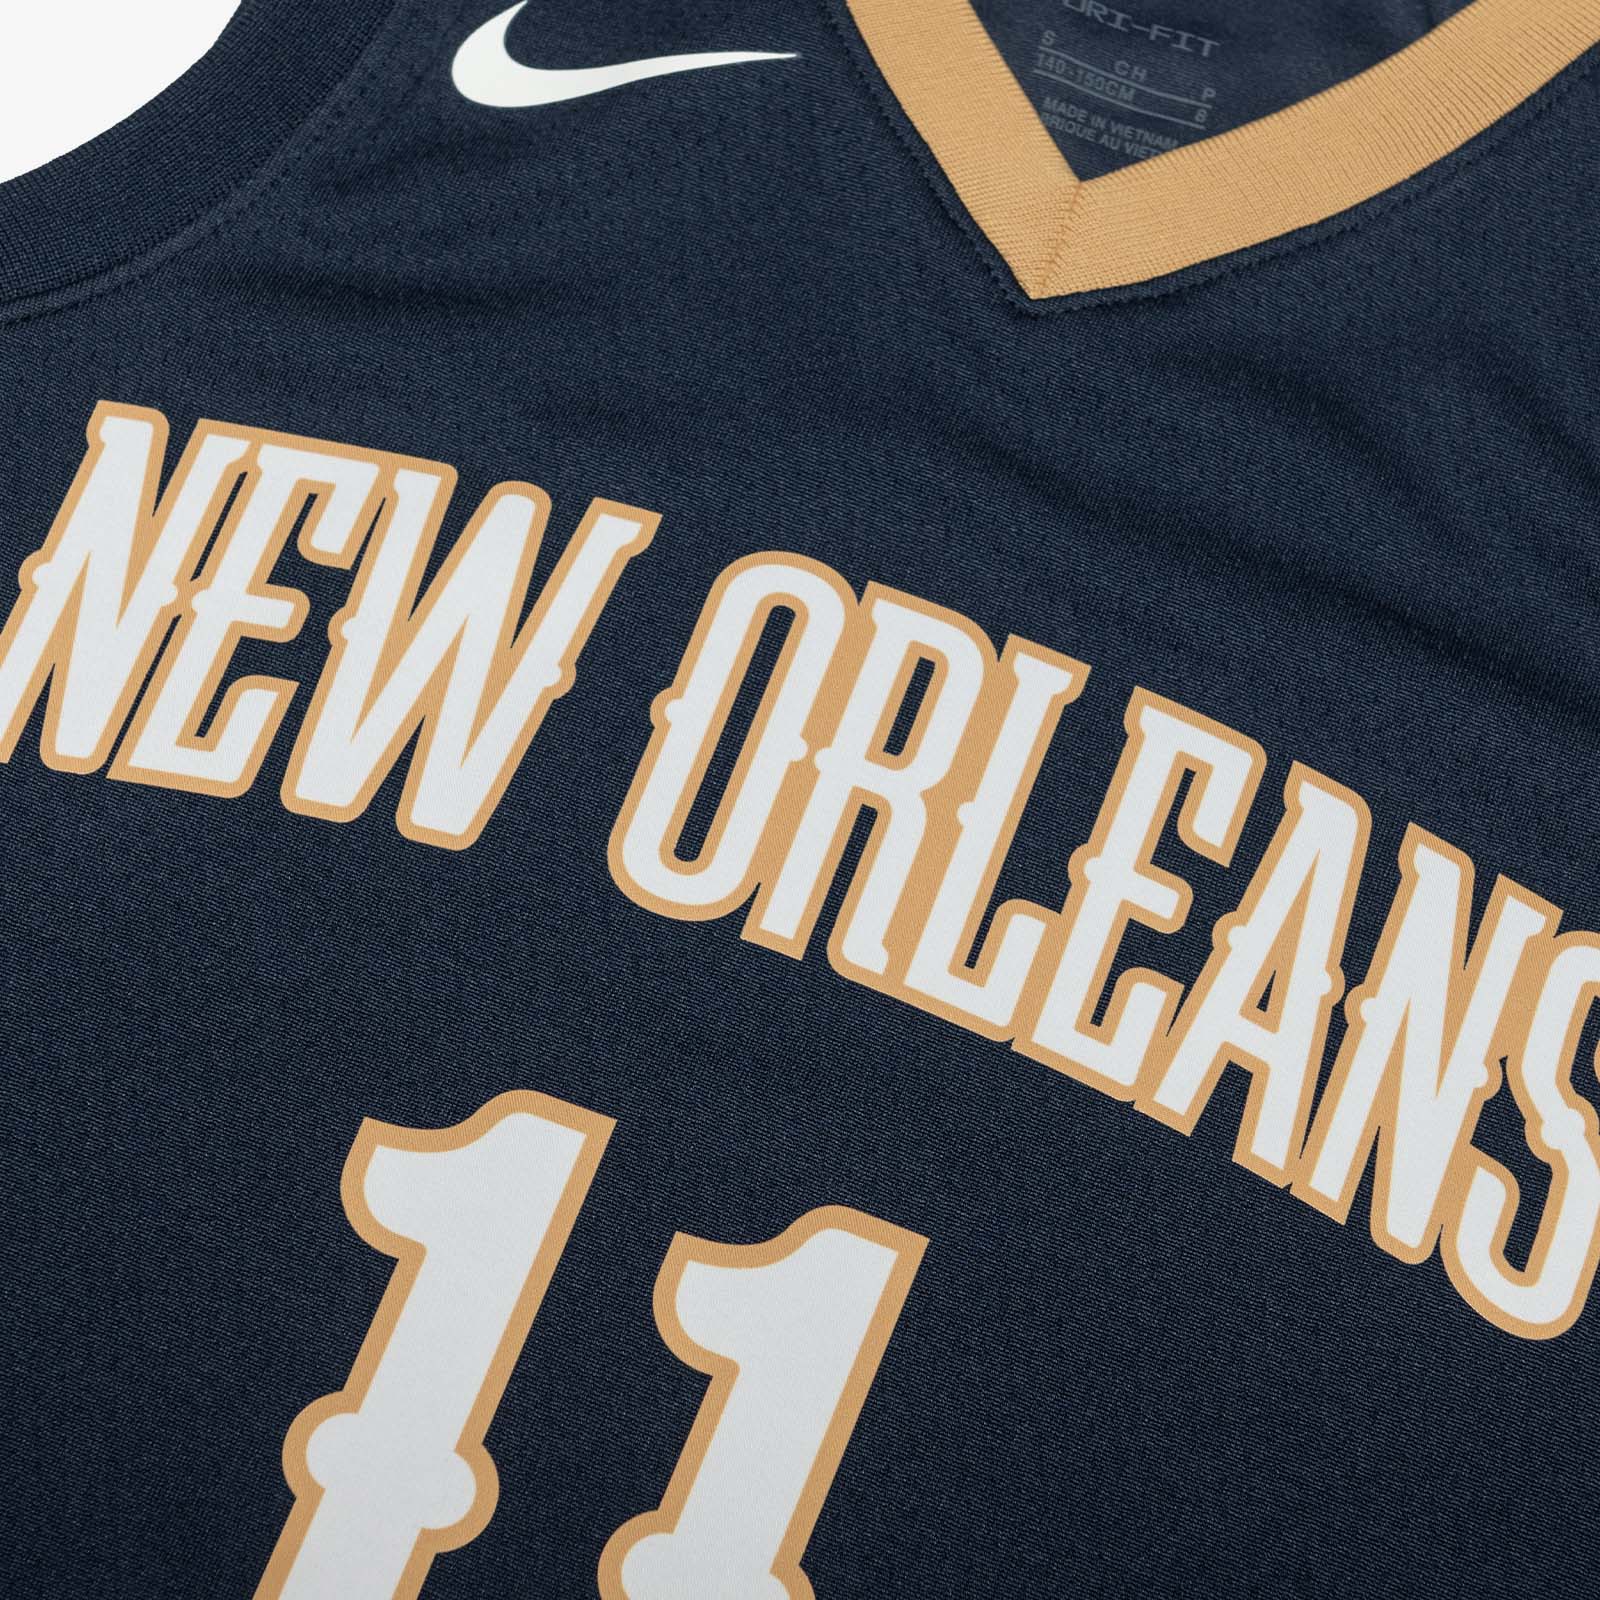 Official New Orleans Pelicans Apparel, Dyson Daniels Pelicans Gear, Pelicans  Store